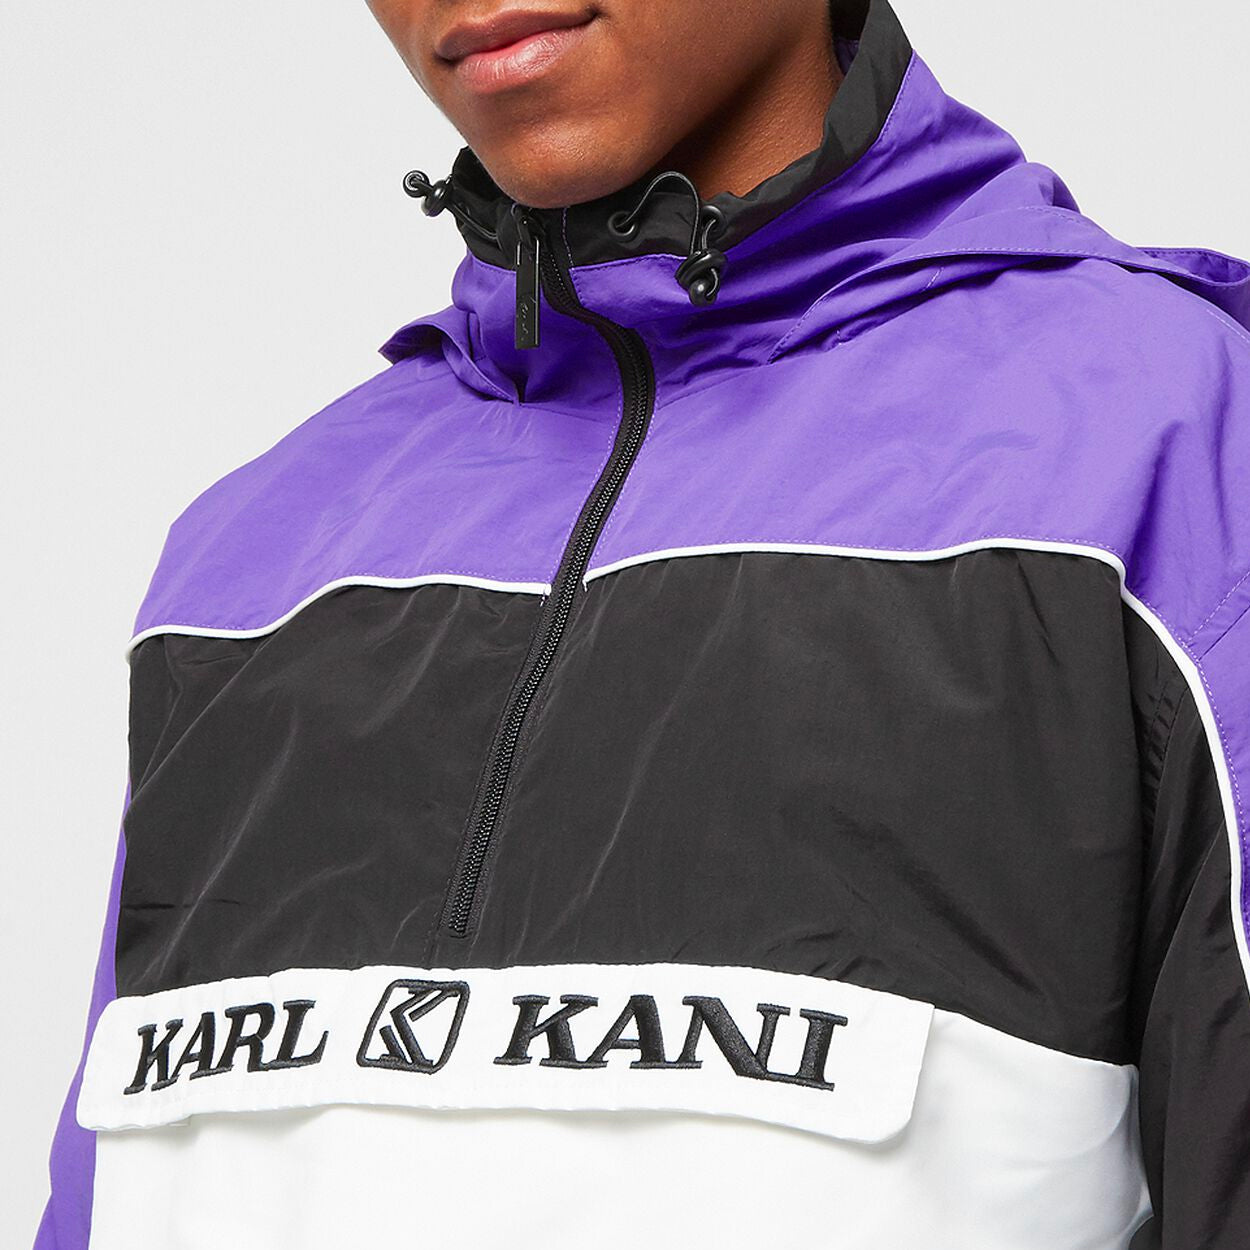 Karl Kani Retro Block Windbreaker purple/black/white - Shop-Tetuan